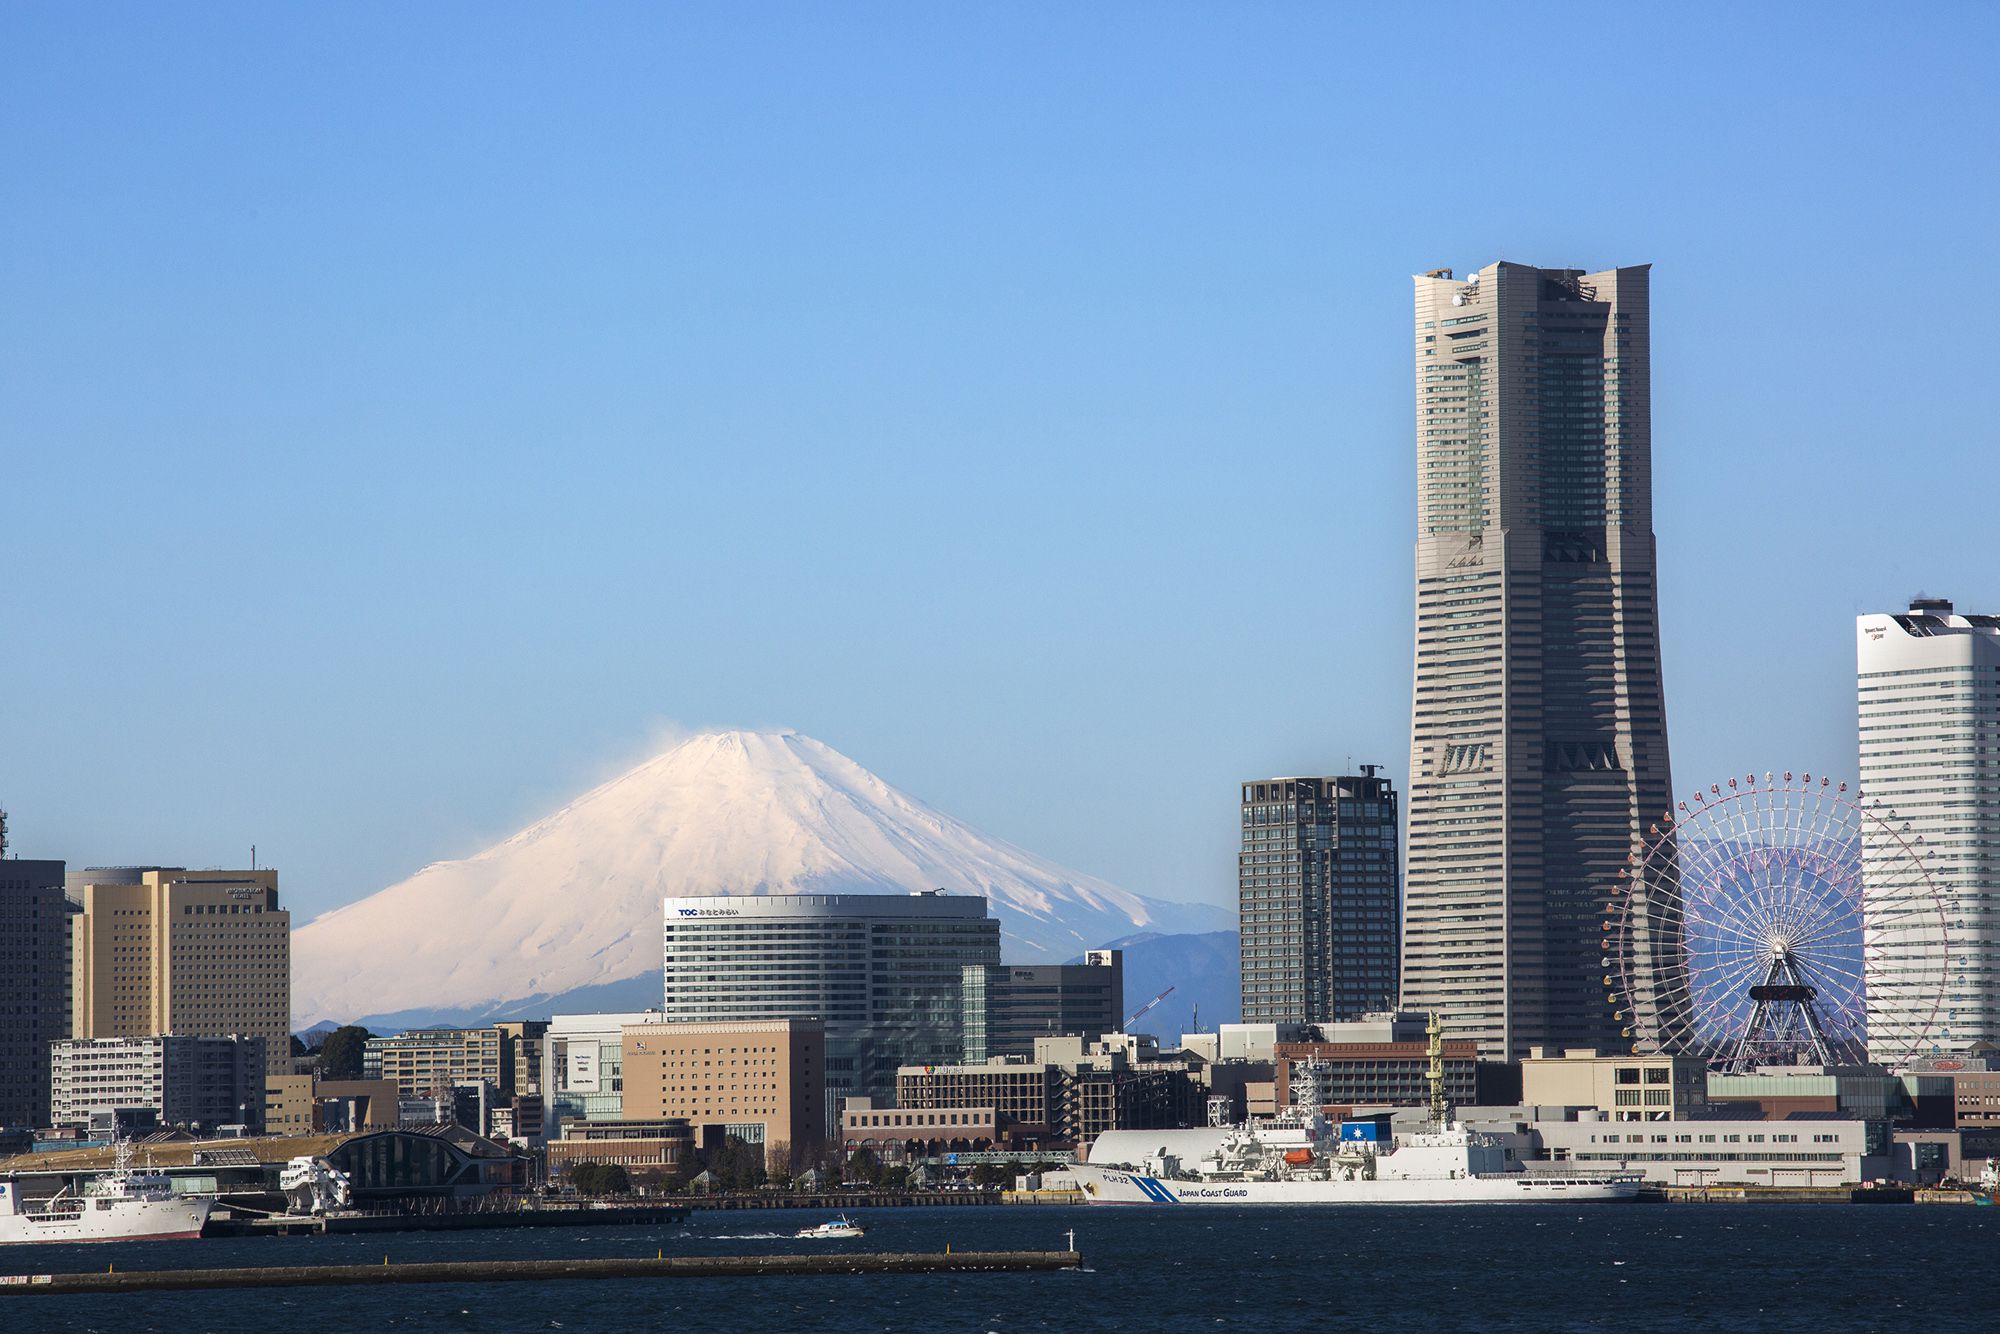 从航行在东京湾上的船内望向横滨港岸。披上银装的富士山也别有一番魅力。